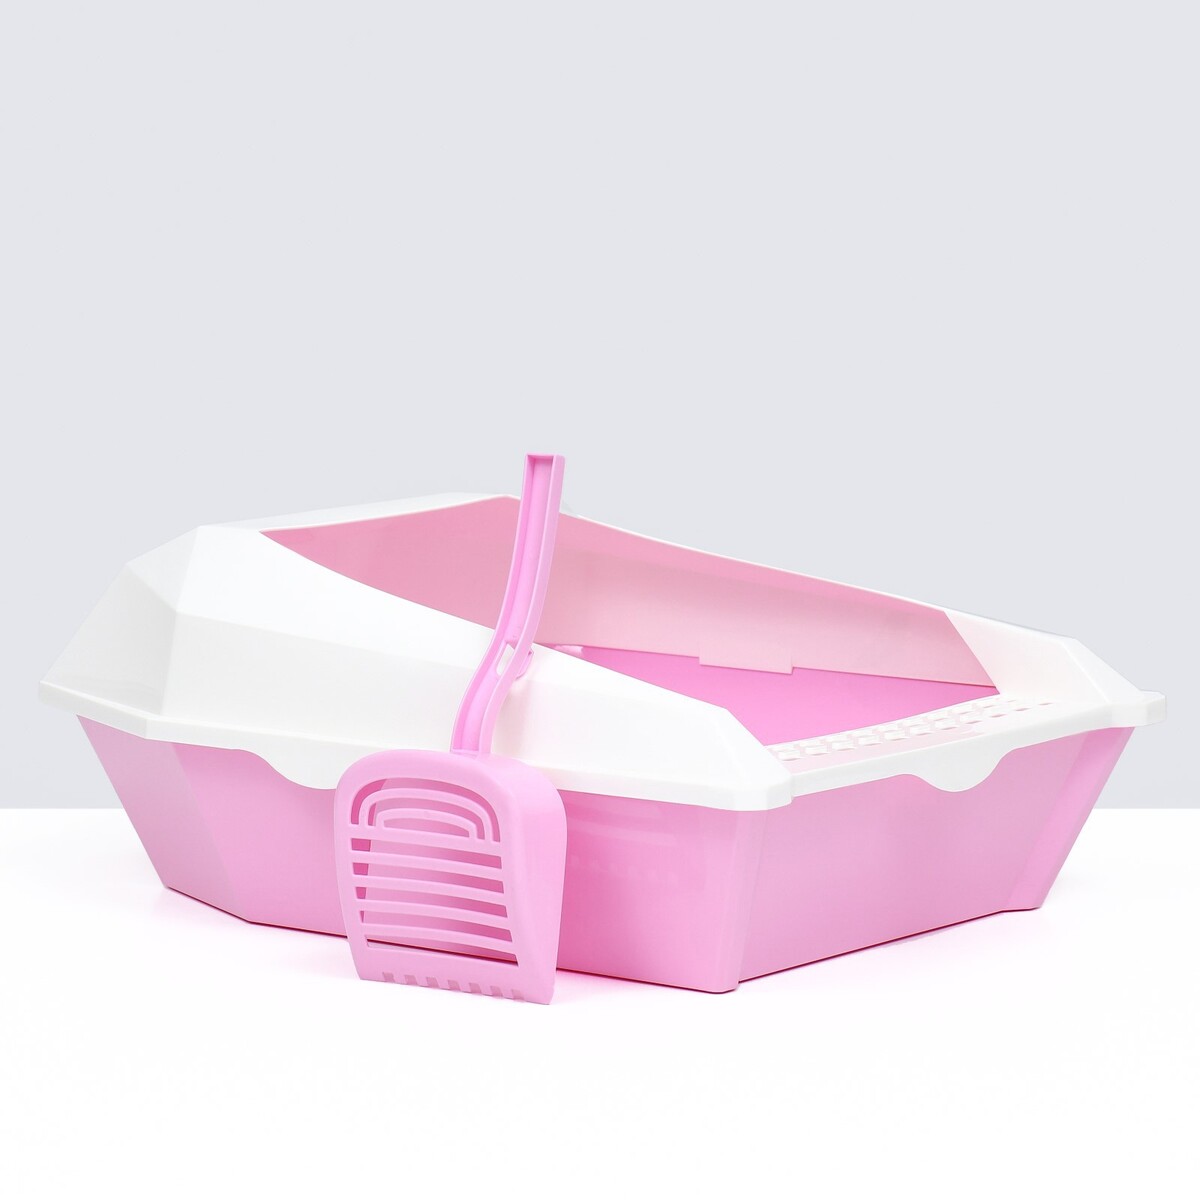 Туалет для кошек фигурный с бортом с совком, 54 х 38 х 20 см, бело-розовый раскрась водой розовый слоненок